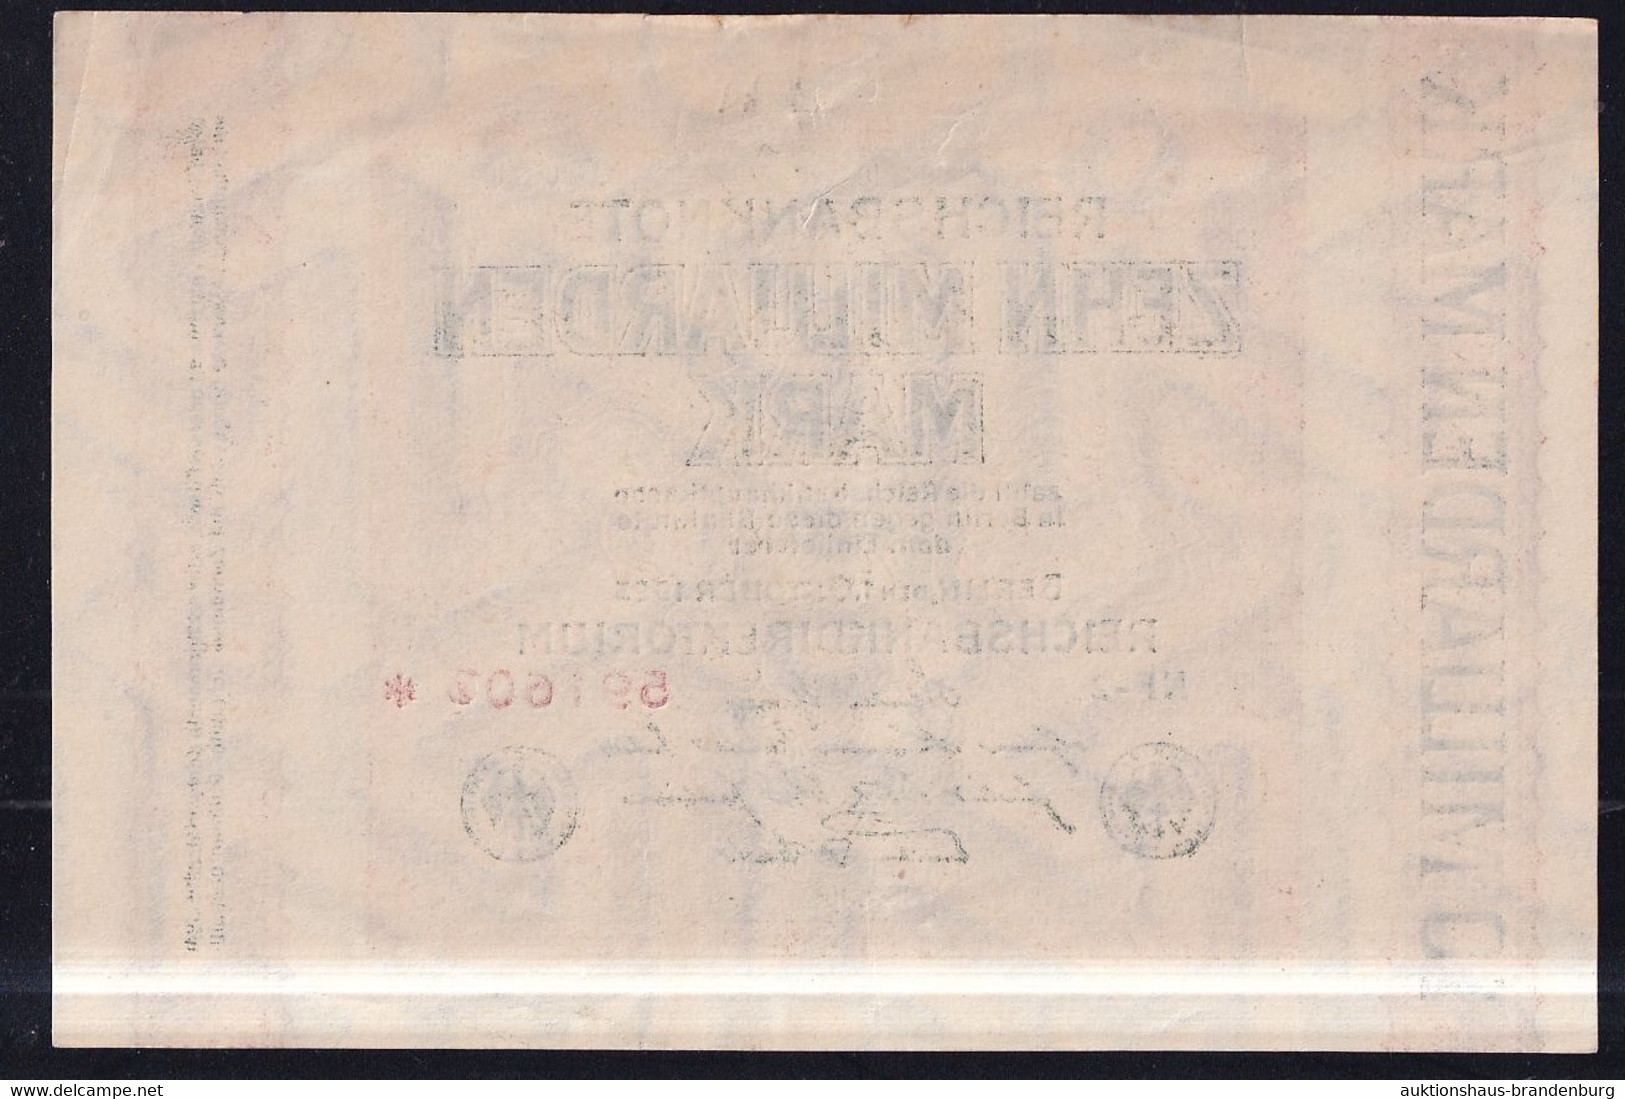 10 Milliarden Mark 1.10.1923 - Wz Hakensterne - FZ NF - Reichsbank (DEU-136f) - 10 Milliarden Mark